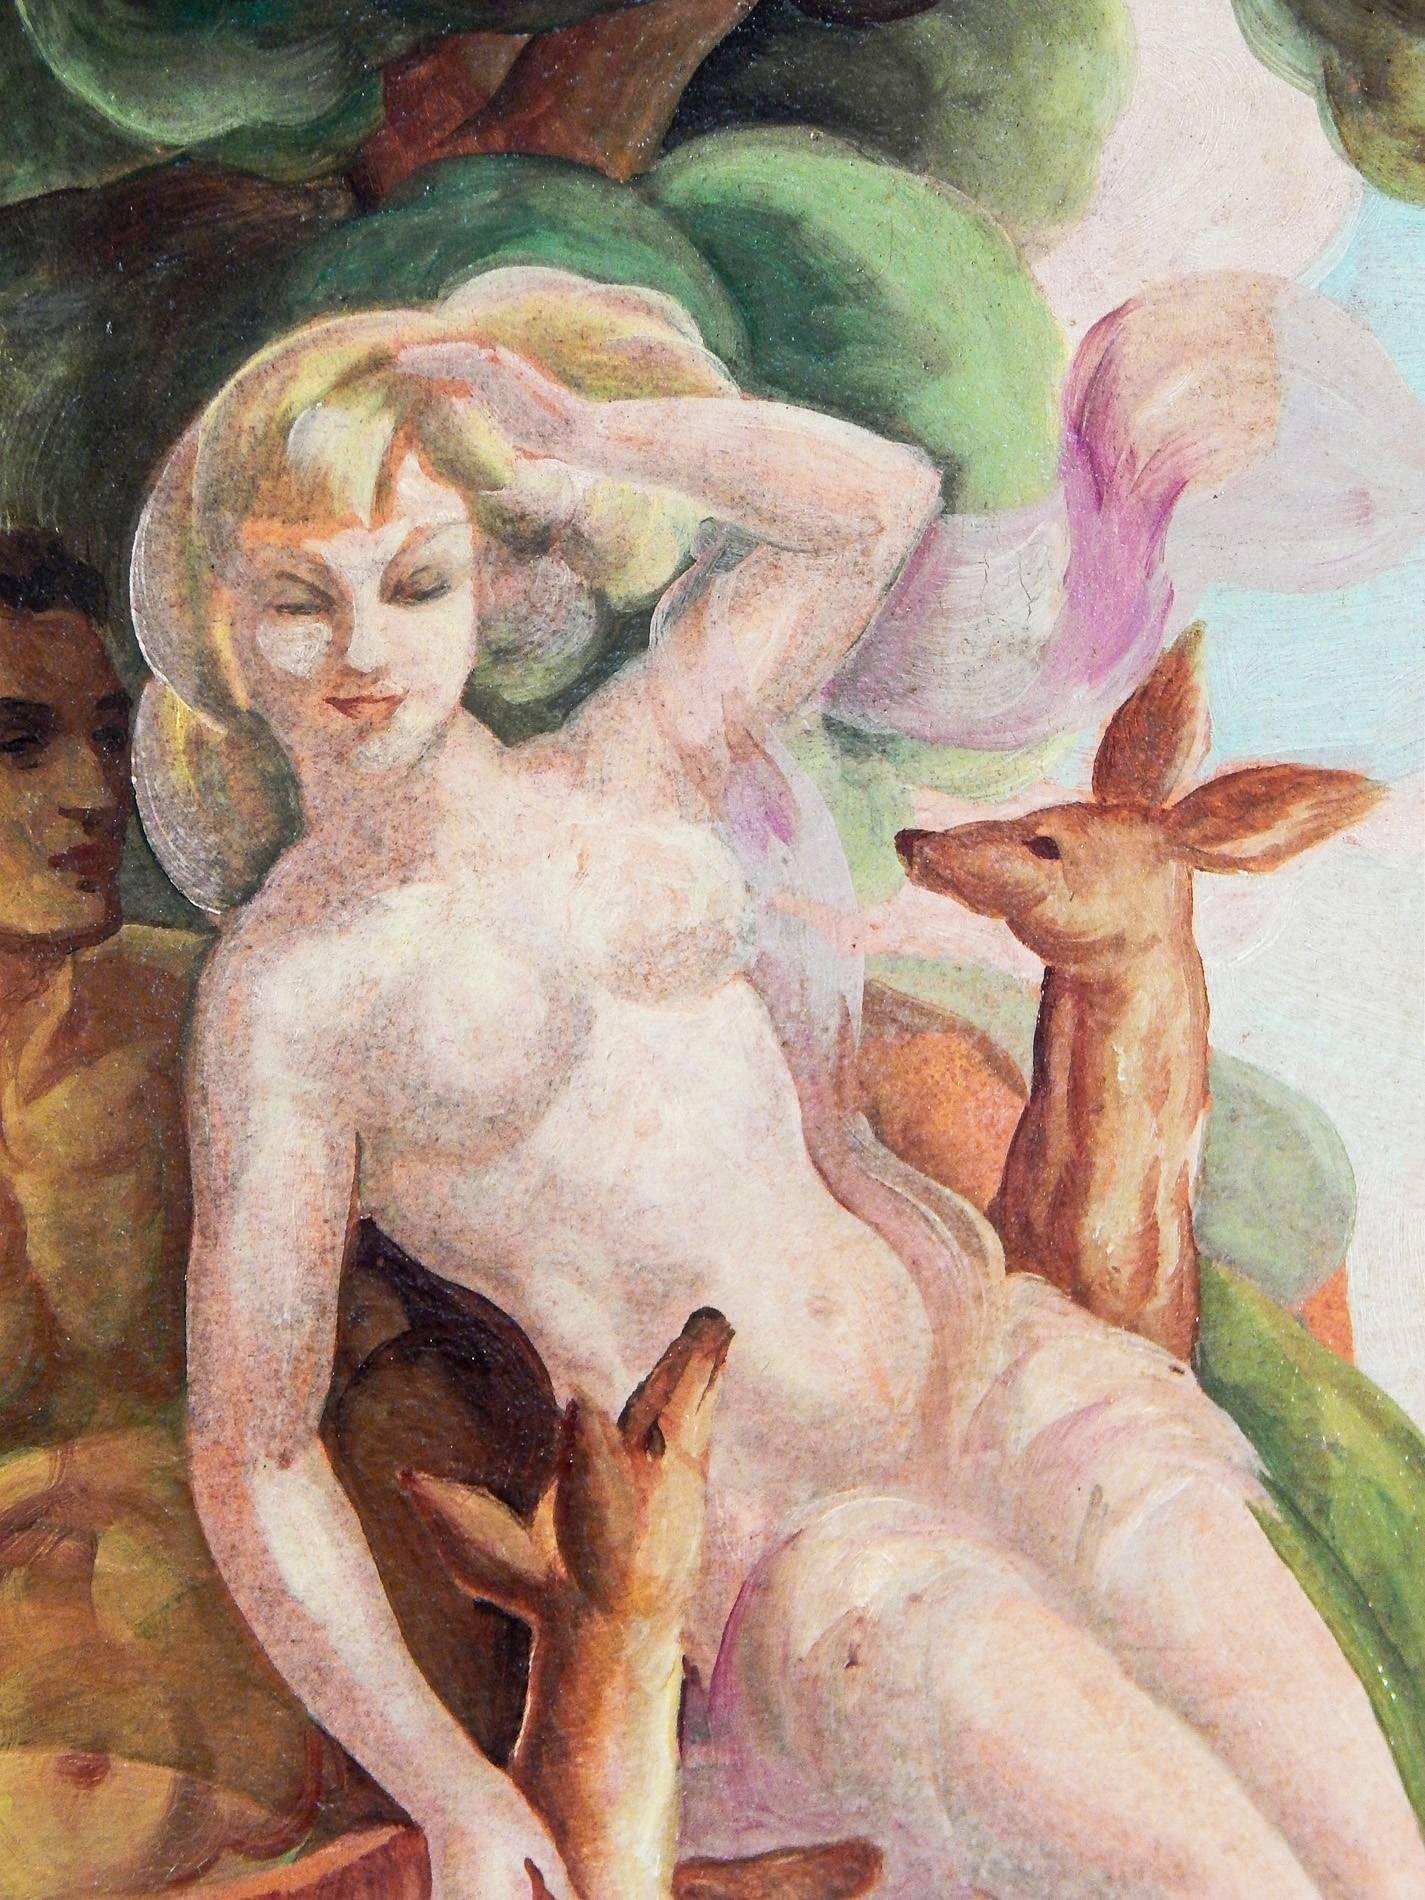 Ce superbe exemple classique de peinture Art déco -- avec un couple d'hommes et de femmes nus accompagnés de deux cerfs au bord de la mer -- a été peint par George Lepape, un important illustrateur et peintre qui était étroitement associé à